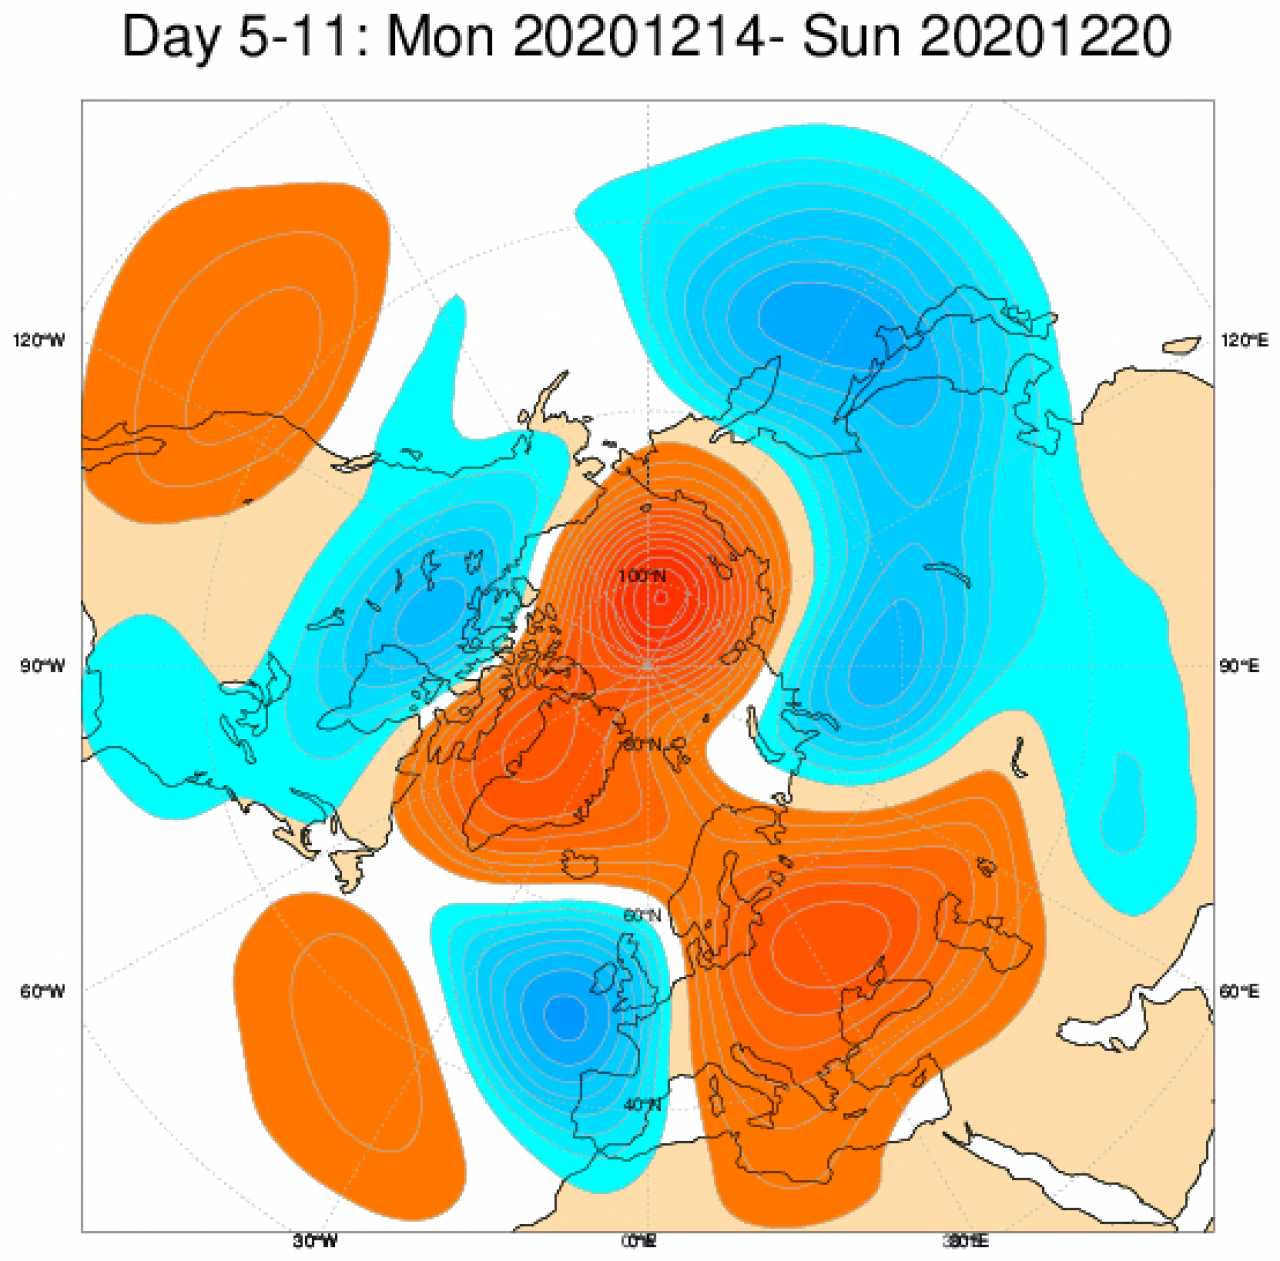 Le anomalie di pressione e geopotenziale in Europa secondo il modello ECMWF, mediate nel periodo 13-20 dicembre